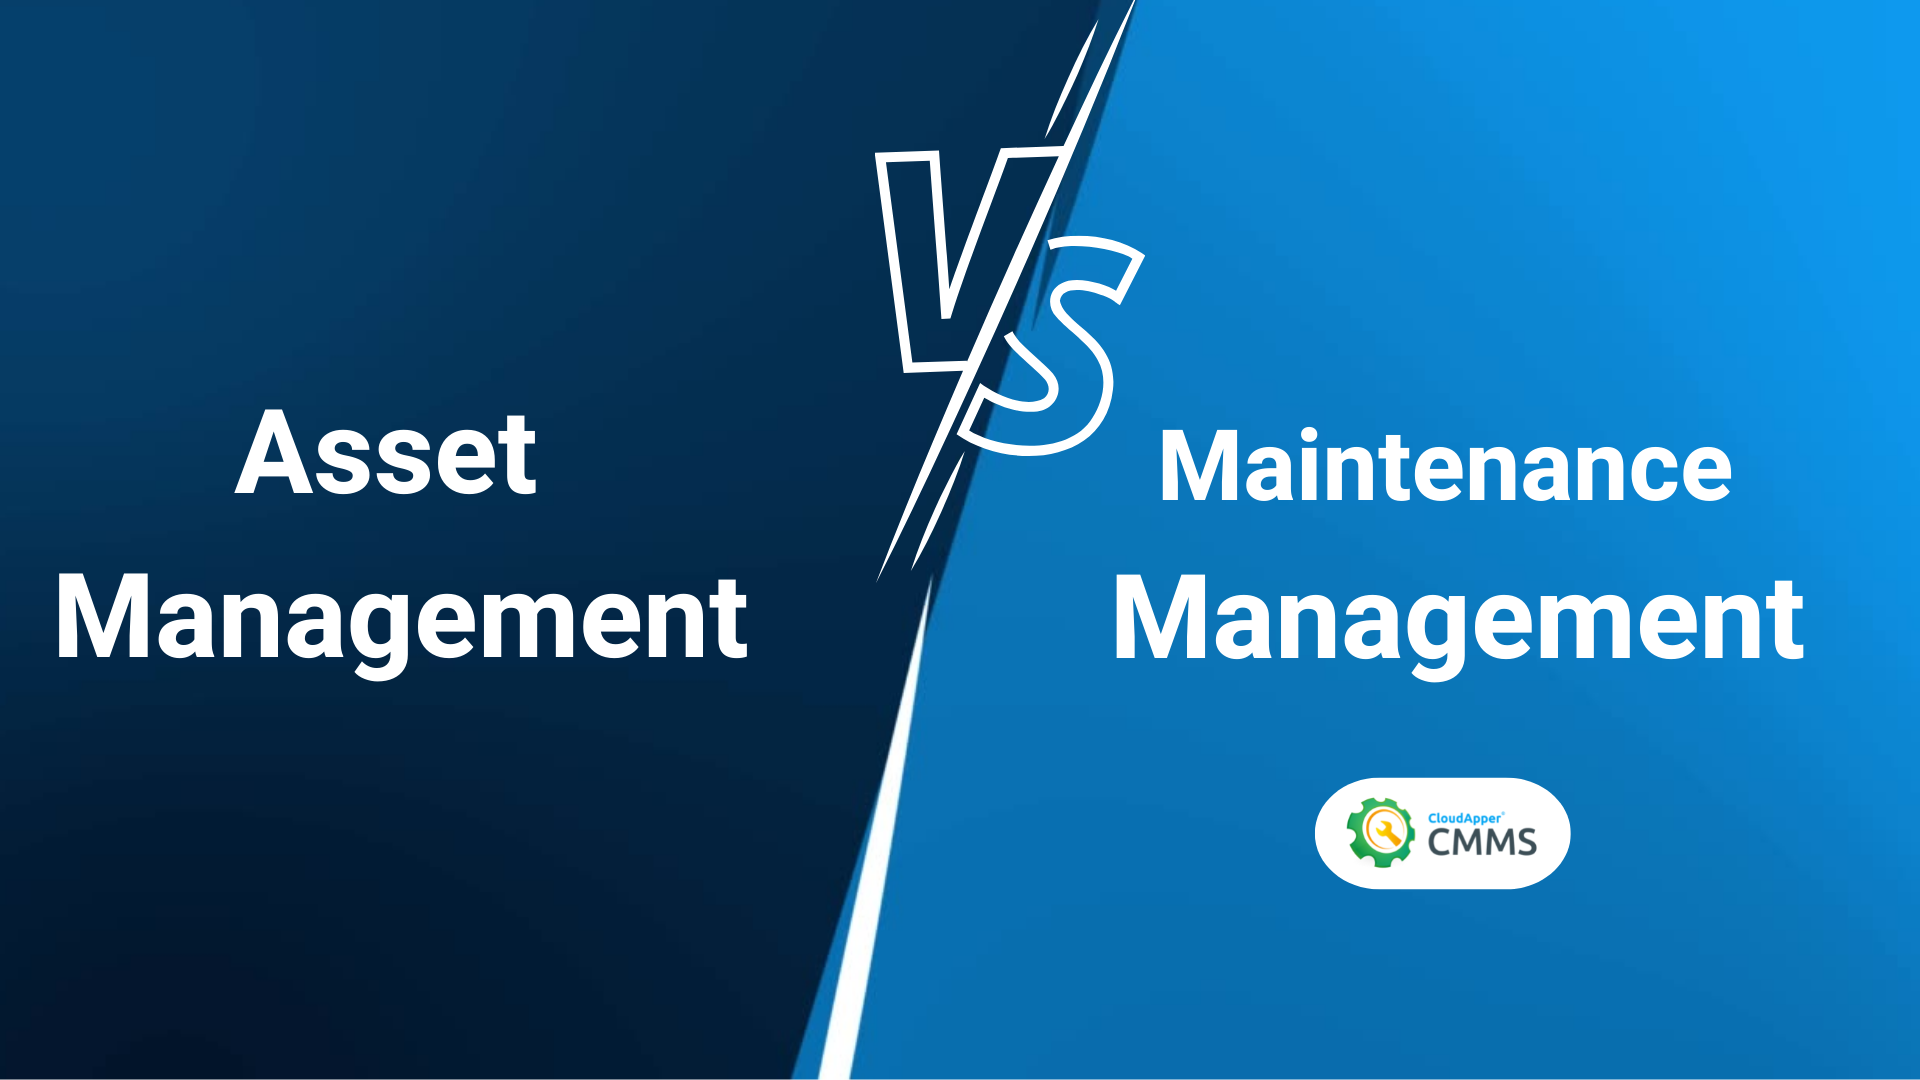 Asset Management vs. Maintenance Management